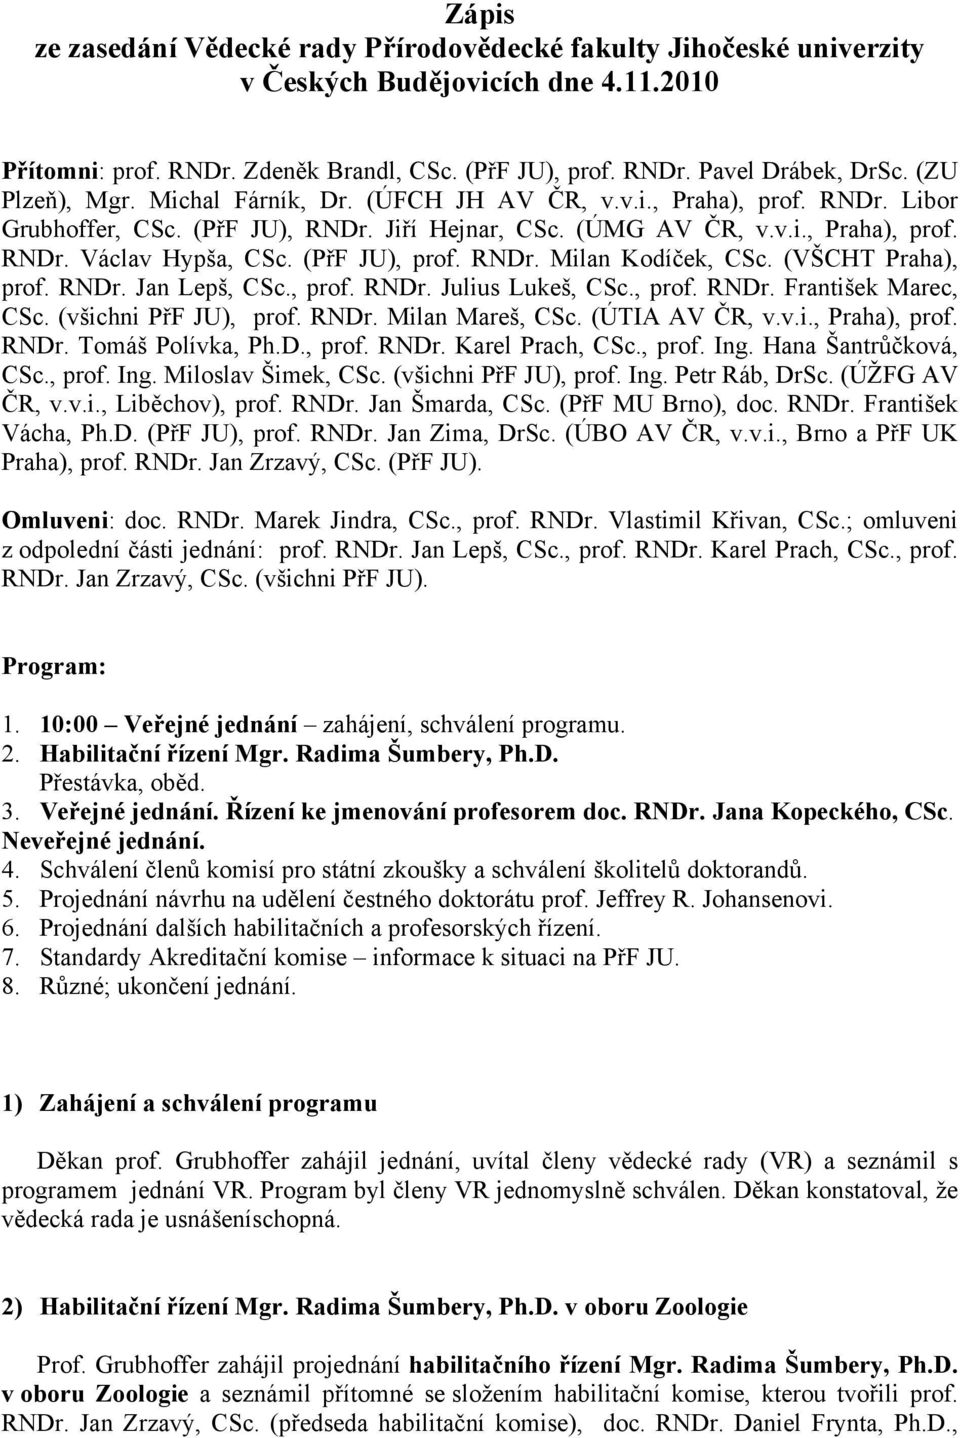 (PřF JU), prof. RNDr. Milan Kodíček, CSc. (VŠCHT Praha), prof. RNDr. Jan Lepš, CSc., prof. RNDr. Julius Lukeš, CSc., prof. RNDr. František Marec, CSc. (všichni PřF JU), prof. RNDr. Milan Mareš, CSc.